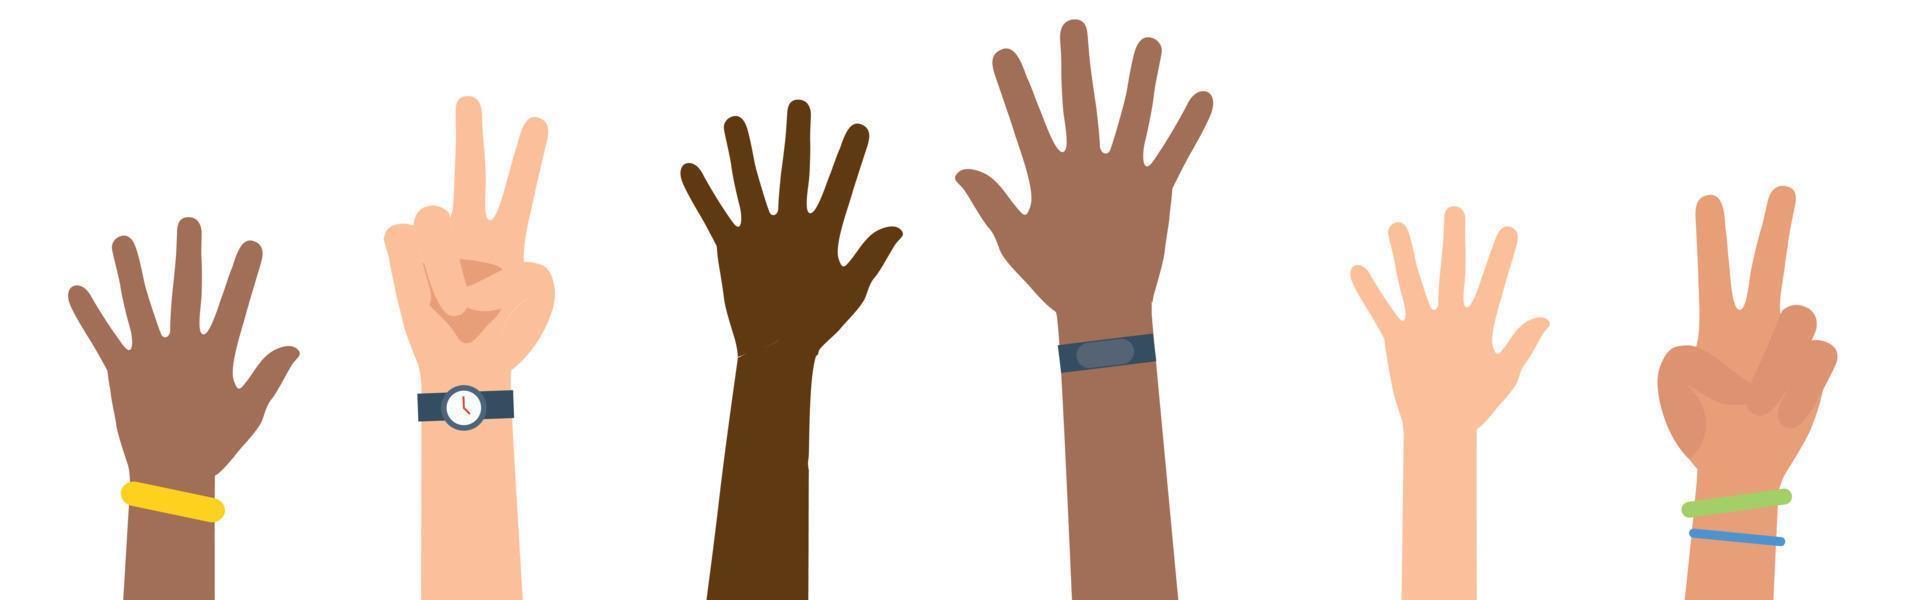 manos multiétnicas y diversas levantadas aisladas sobre fondo blanco. ilustración vectorial vector